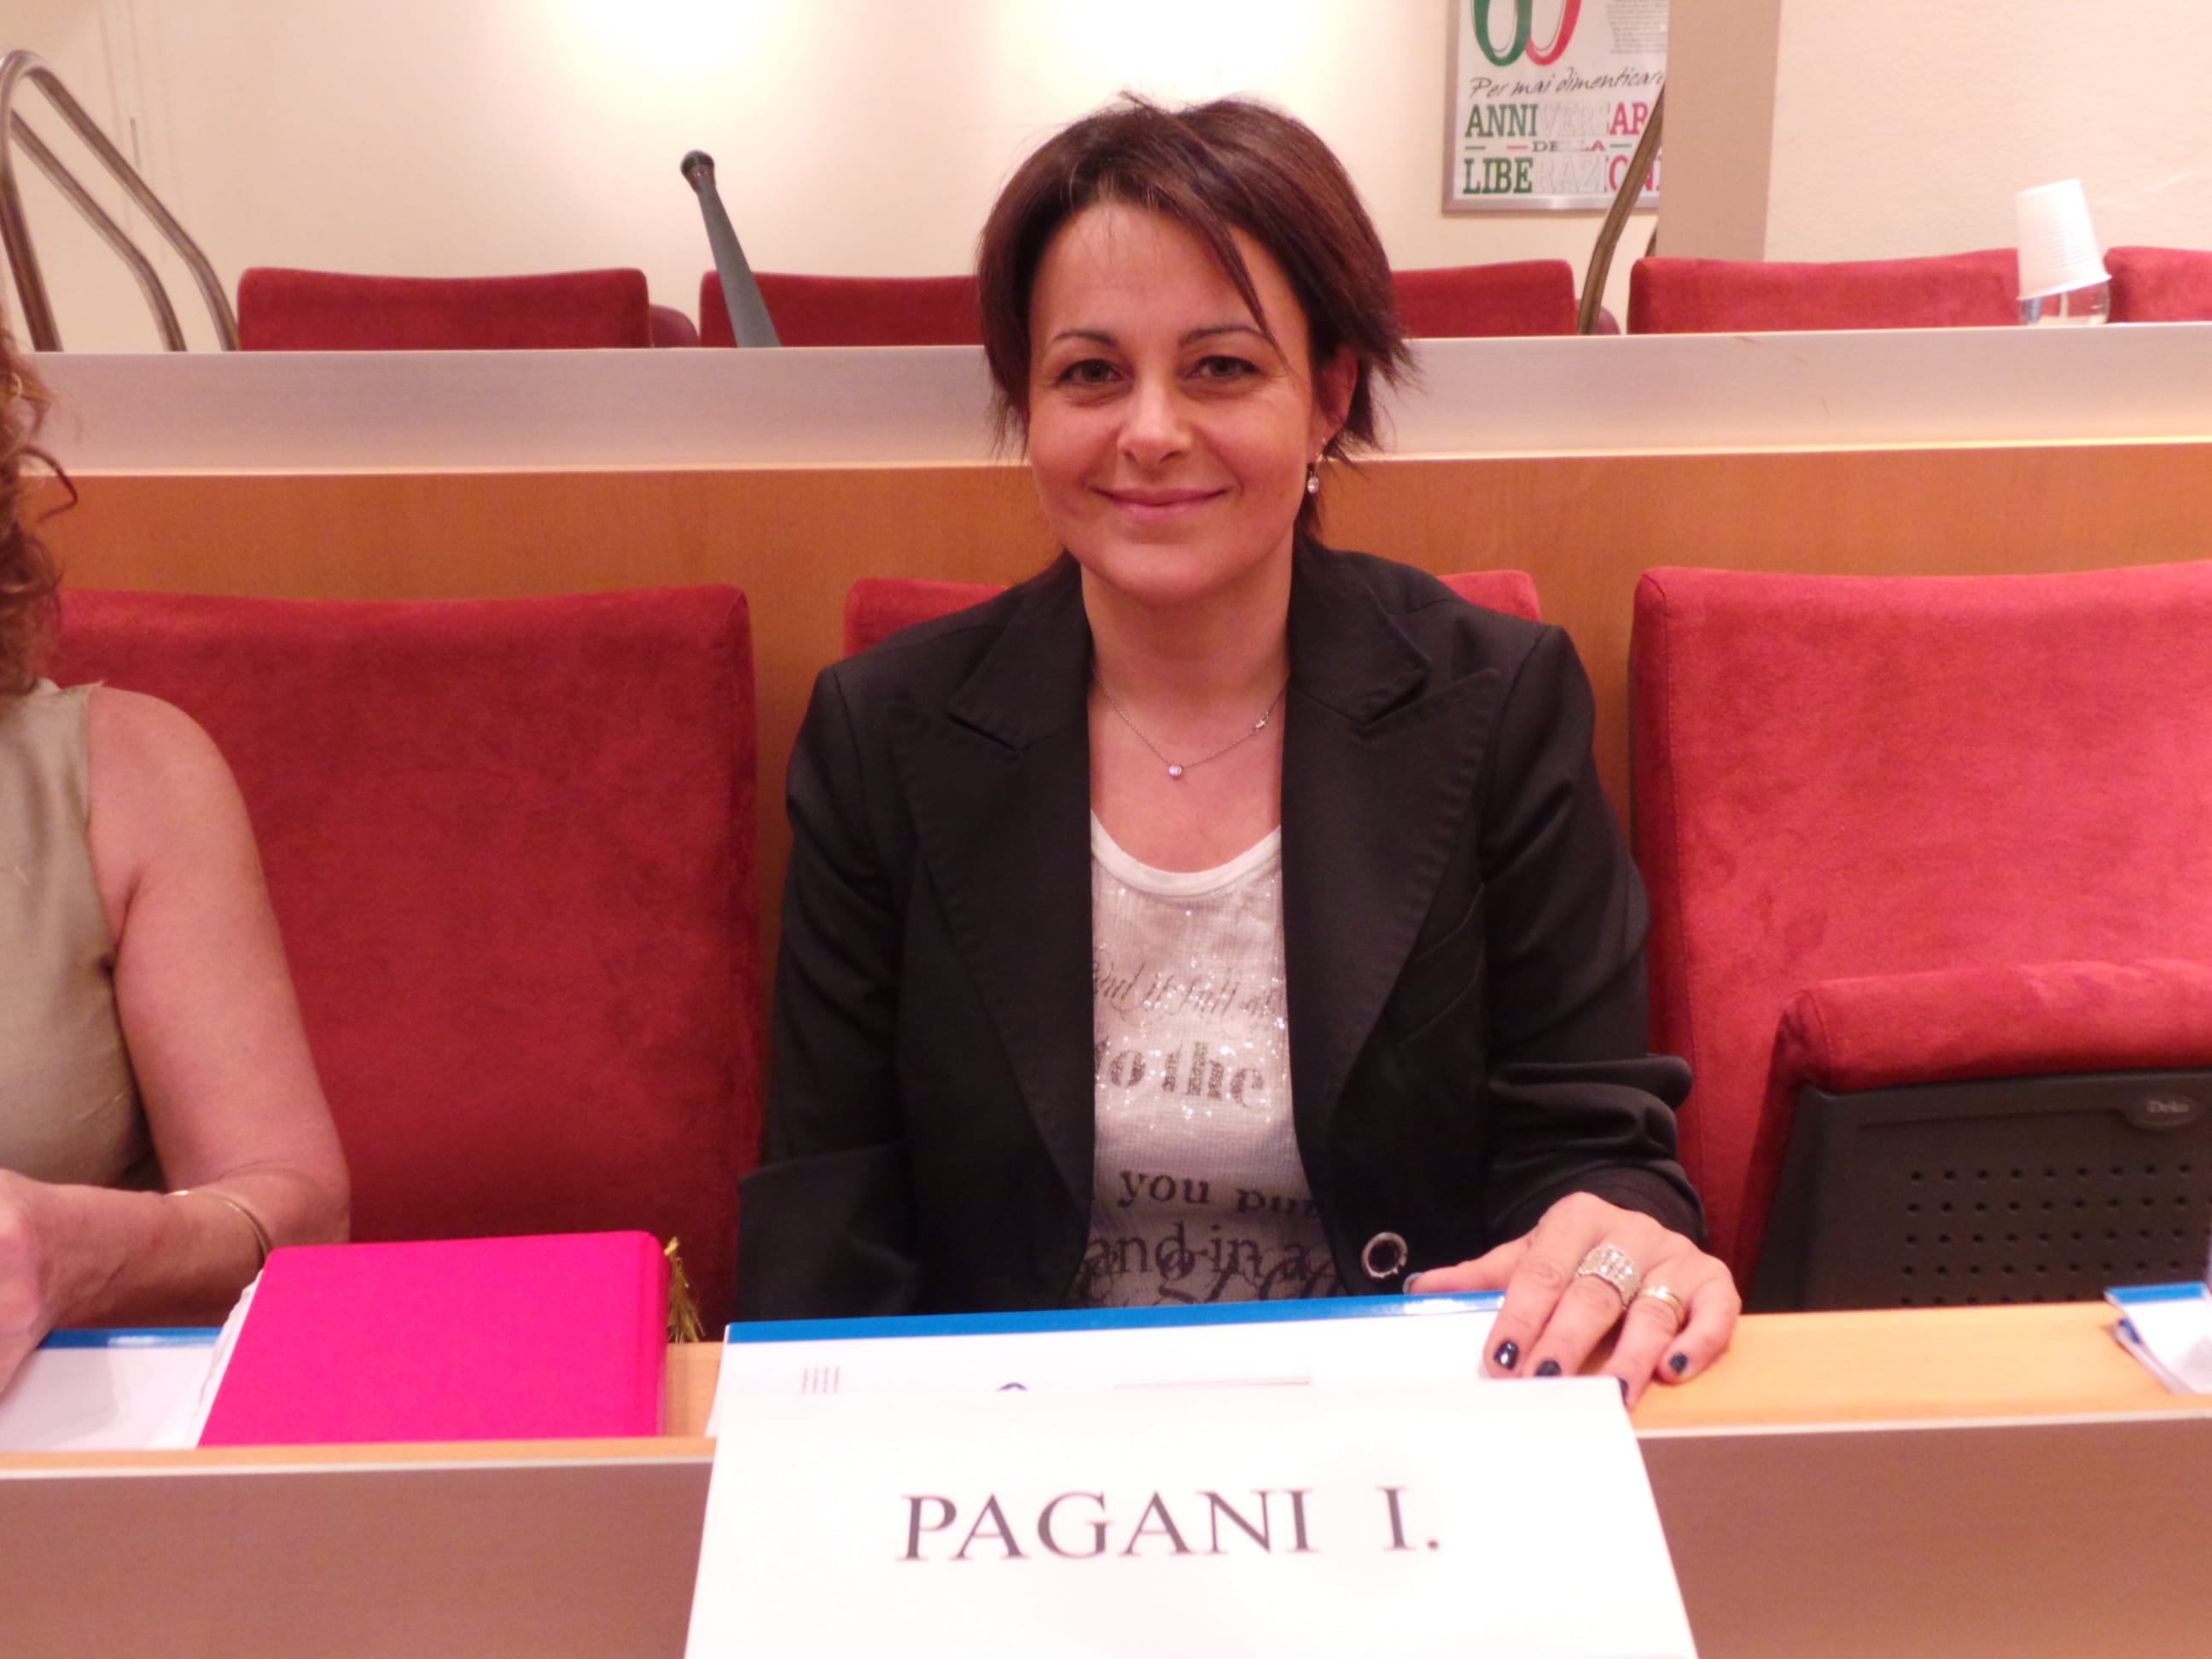 Assessore Pagani: “Lo sviluppo della comunità parte dal sostegno dei più fragili”